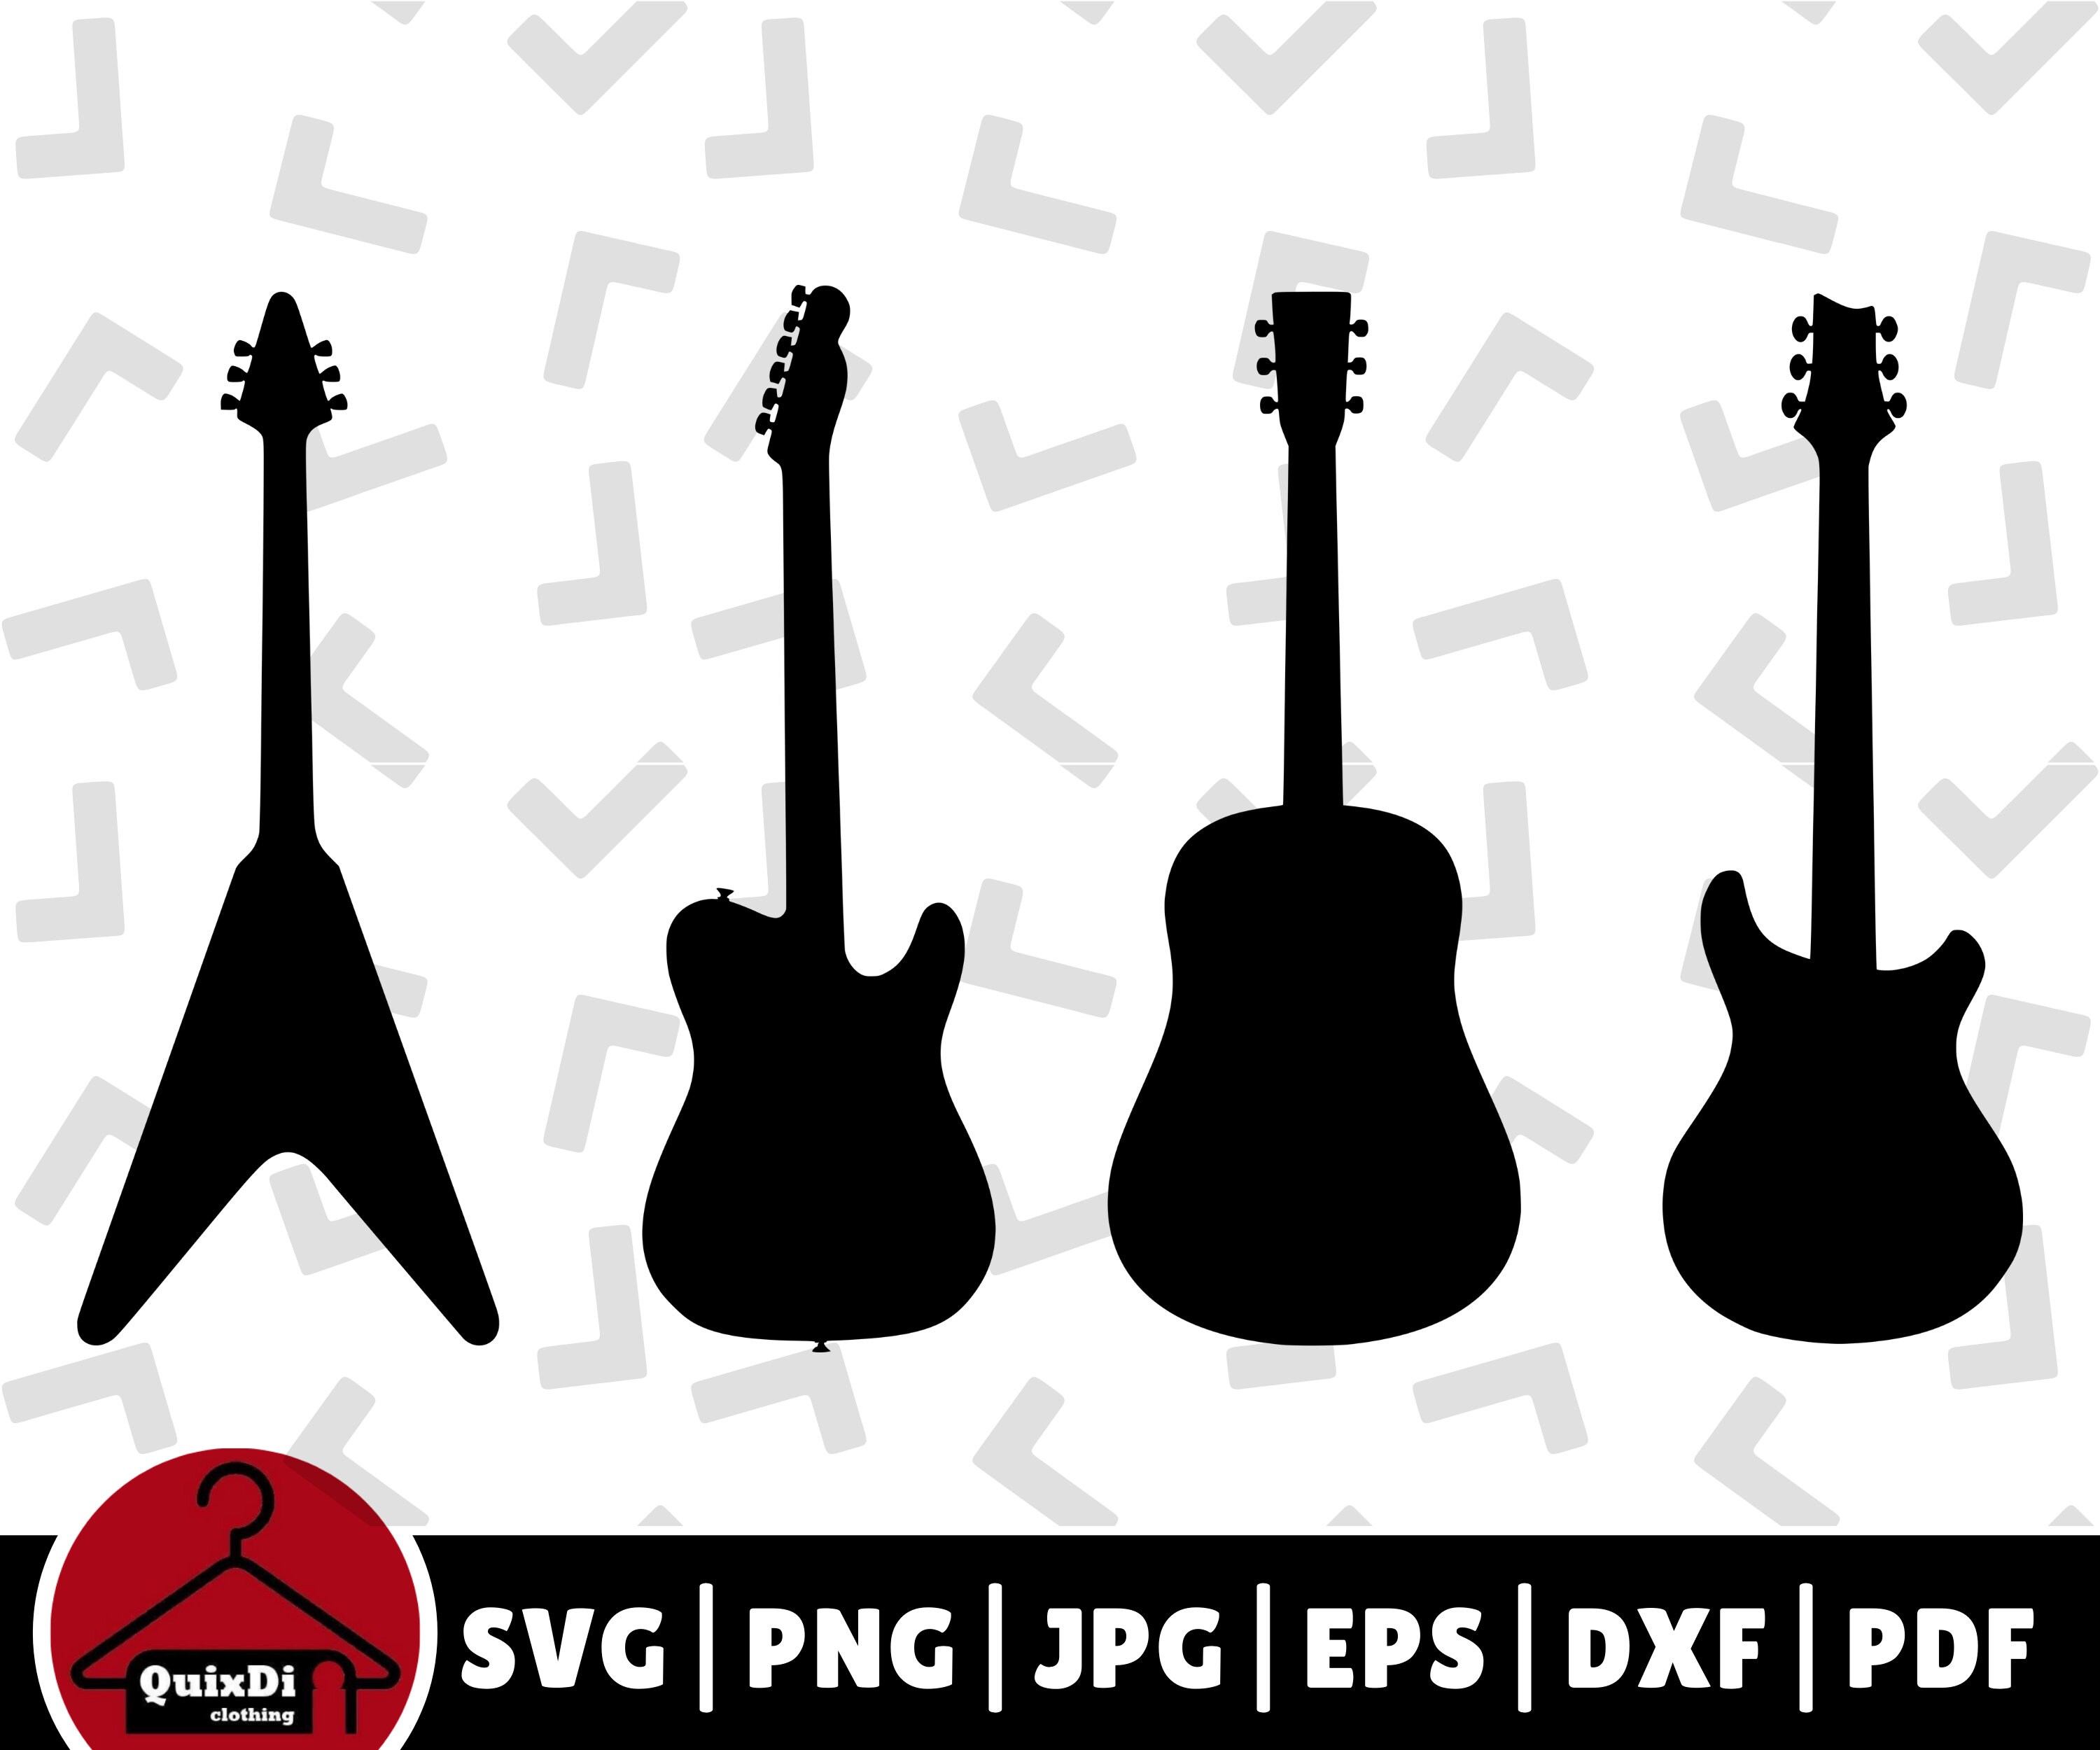 Union Jack UK Guitare électrique acoustique SVG Cricut Cut File